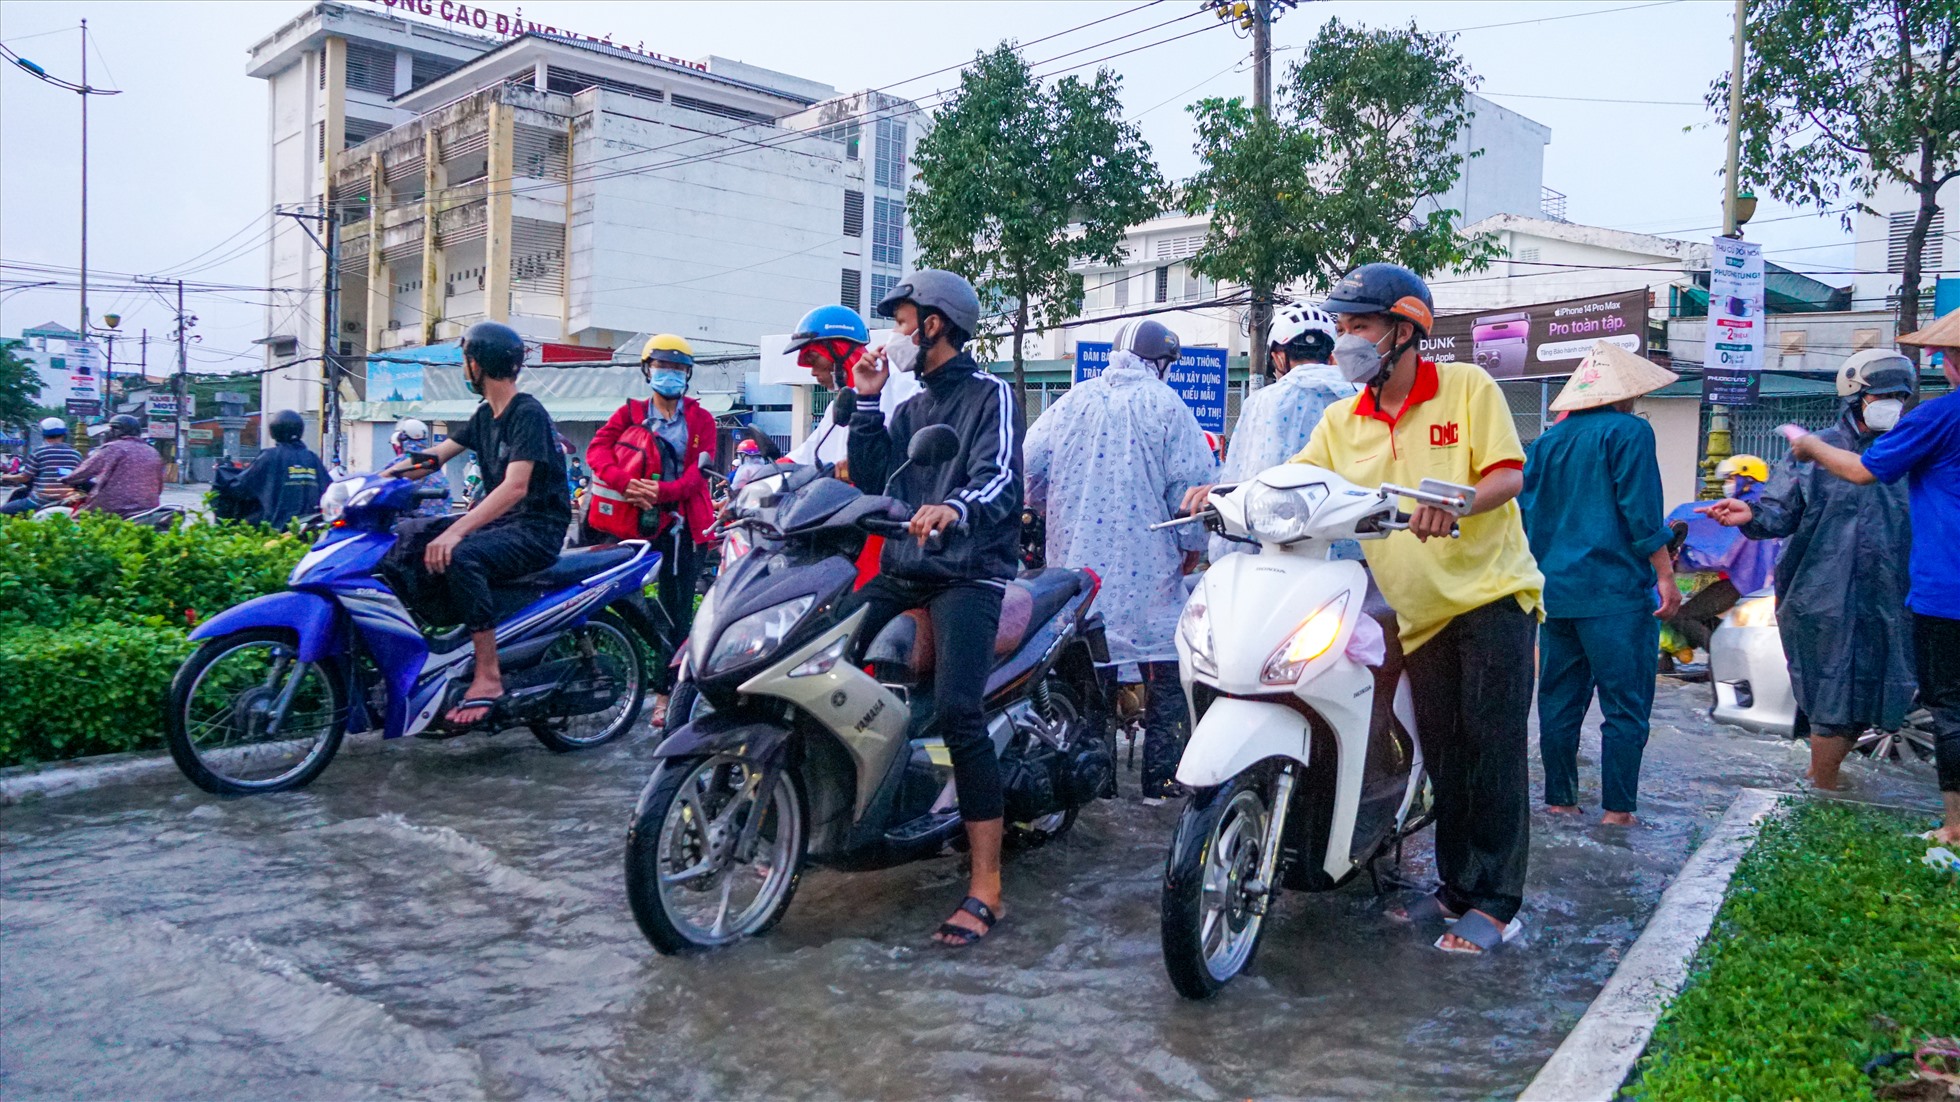 Hàng loạt xe chết máy đi qua đoạn ngập sâu, dừng lại trên đường Mậu Thân, đoạn gần dưới chân cầu Rạch Ngỗng và giao lộ Mậu Thân – Nguyễn Văn Cừ để sửa chữa.